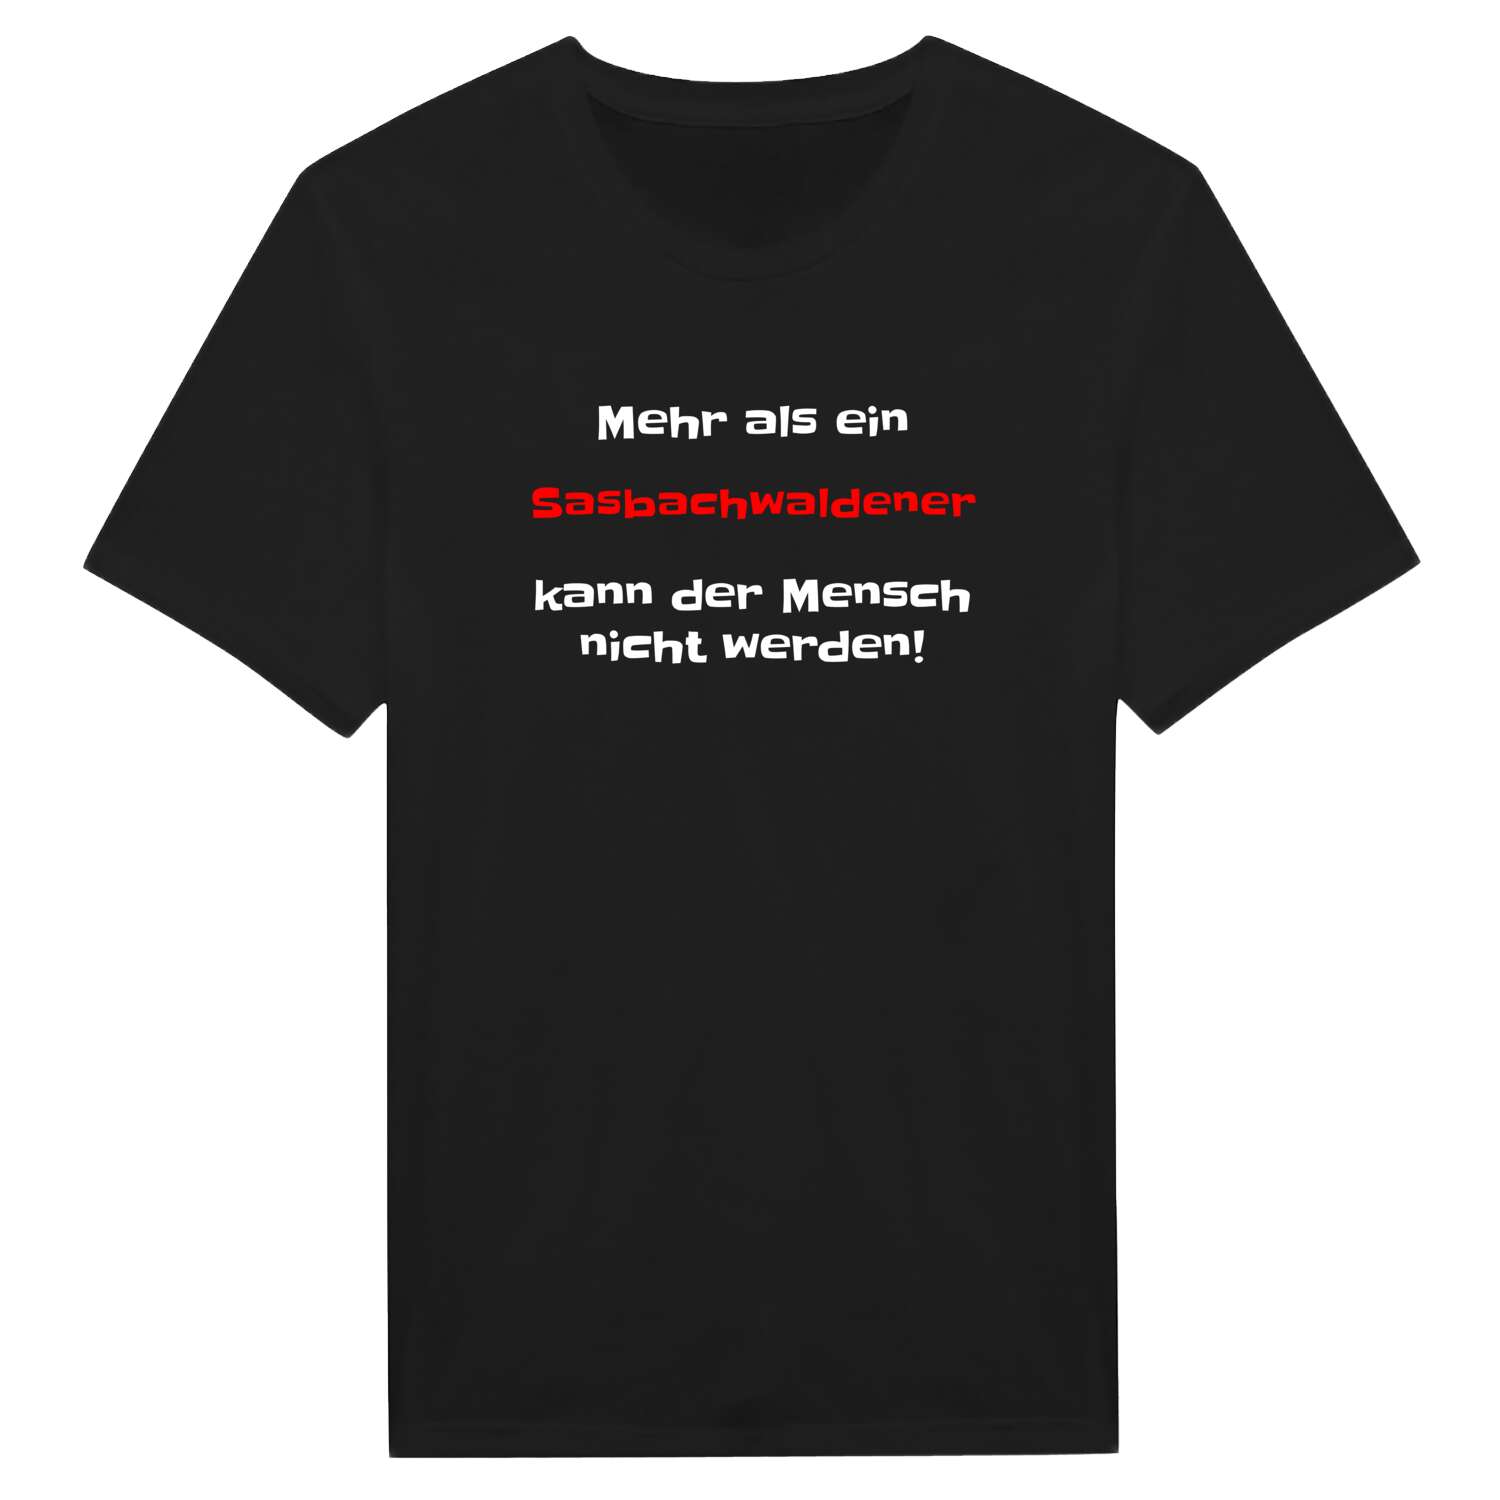 Sasbachwalden T-Shirt »Mehr als ein«